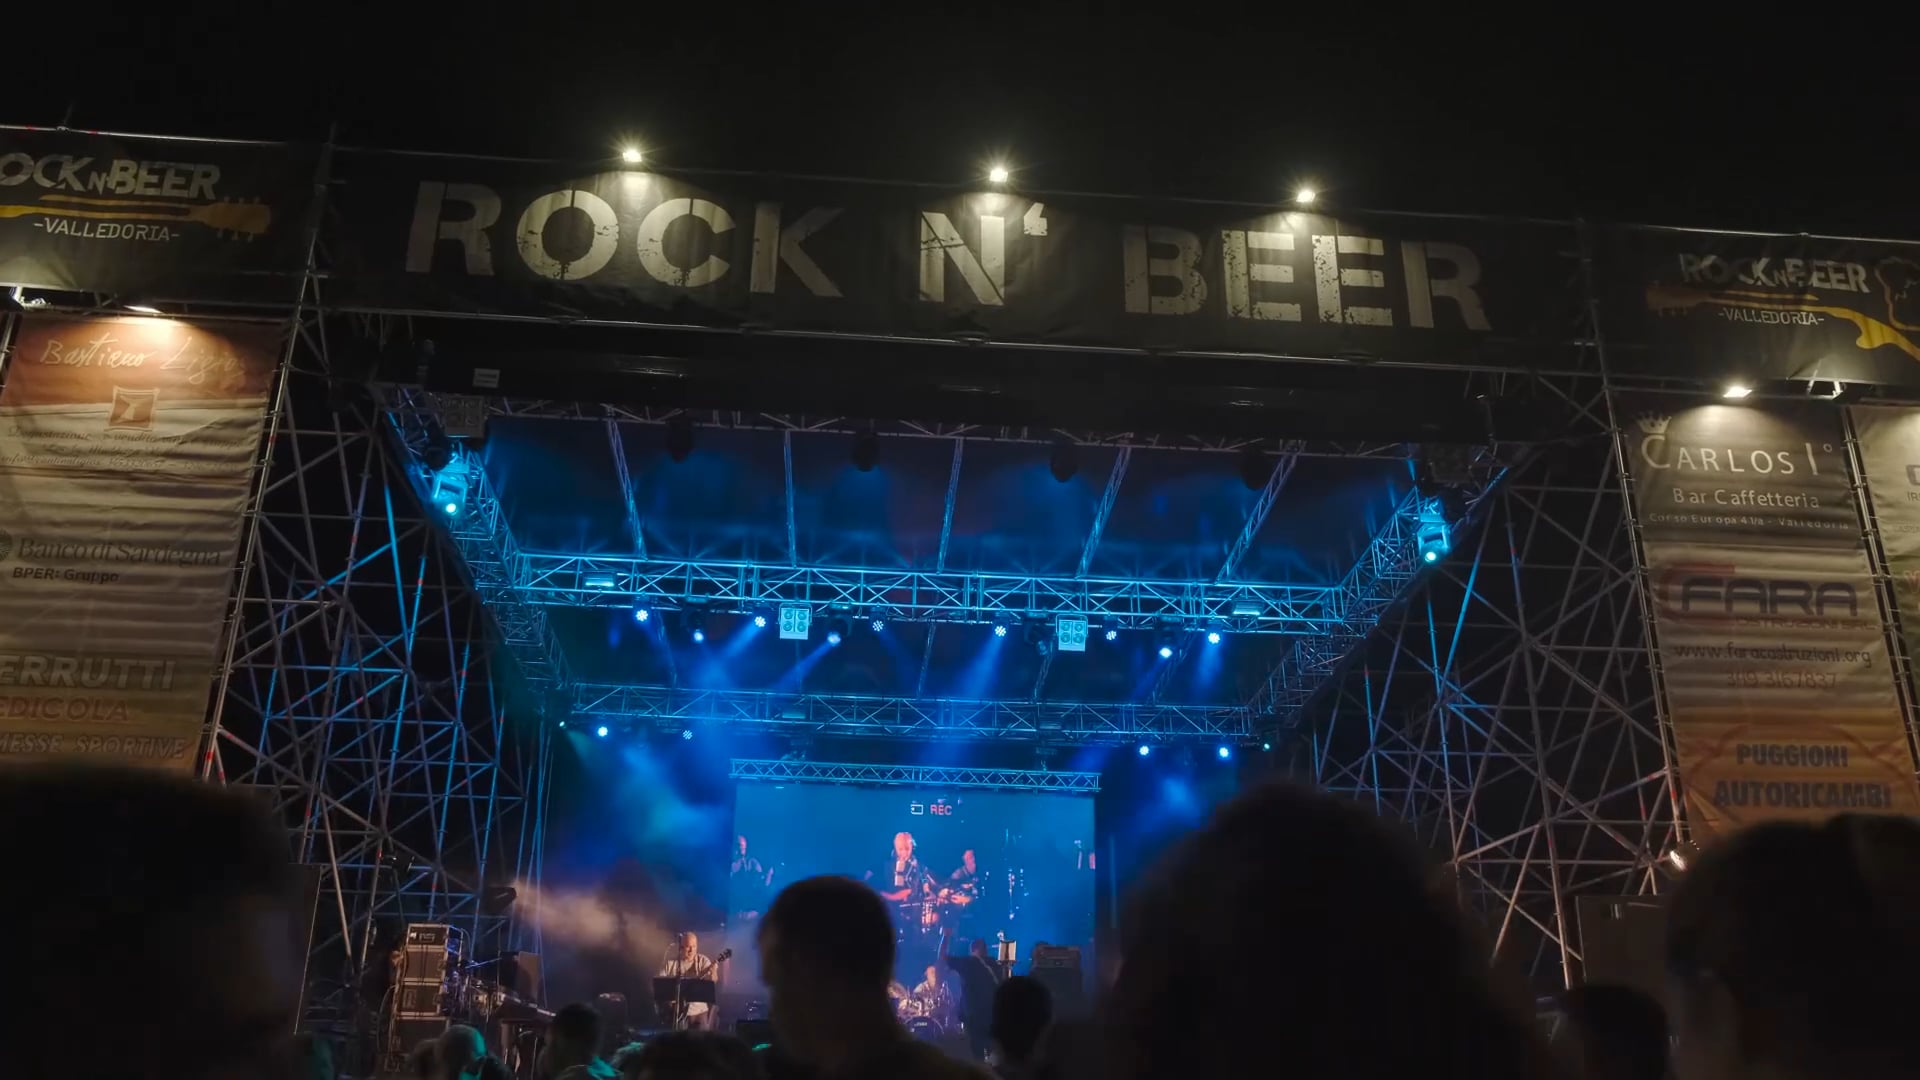 Rock n' Beer Promo 